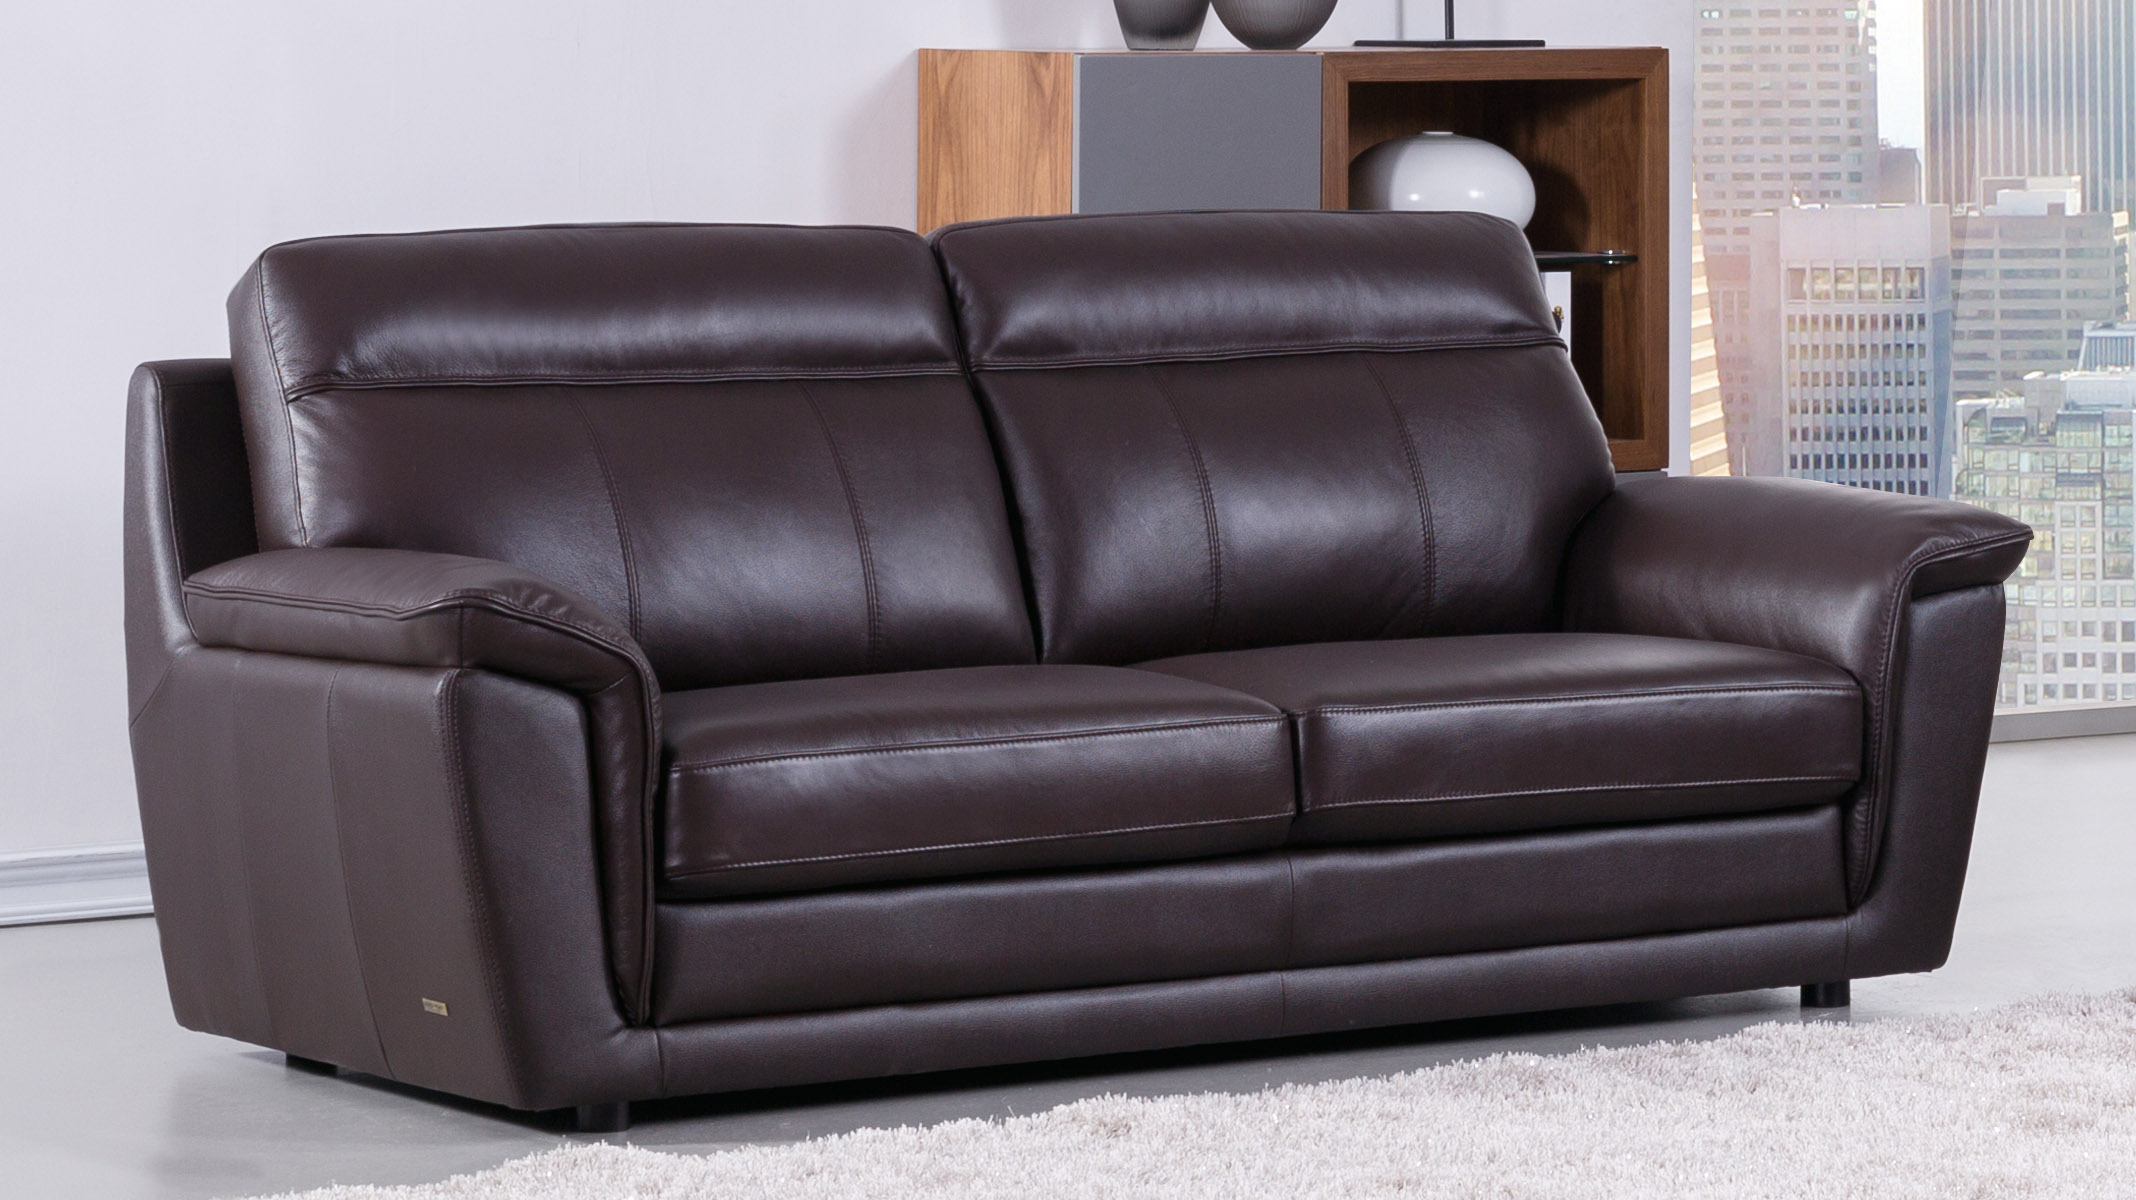 italian leather sofa from natuliza